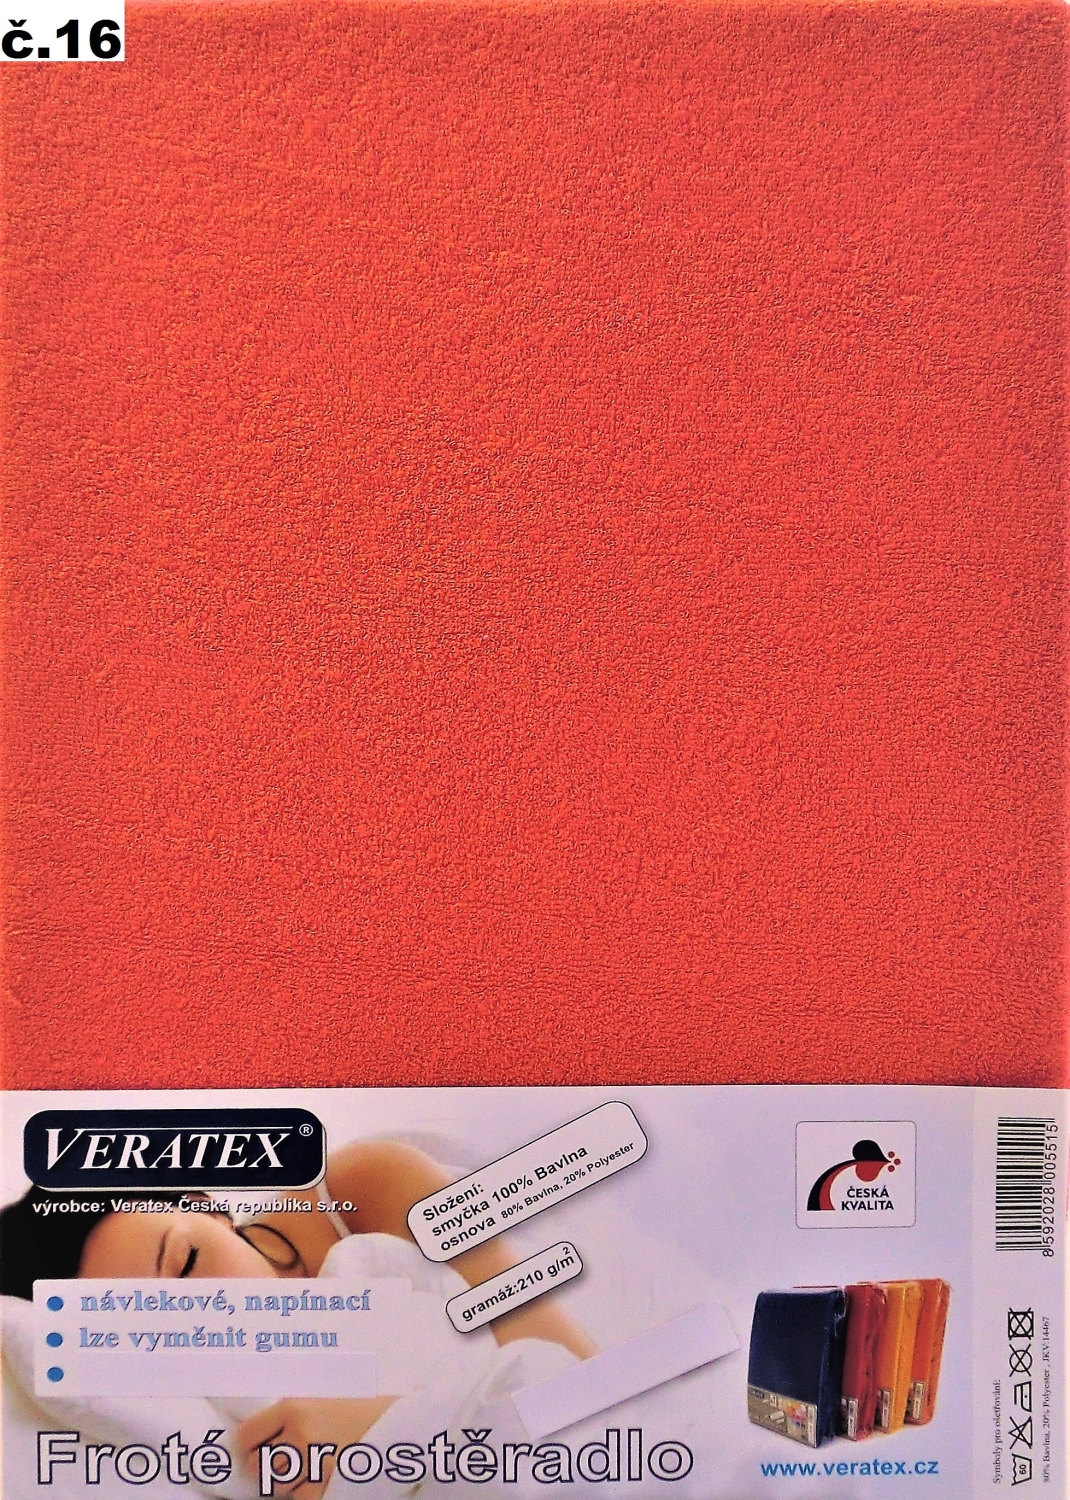 Veratex Froté prostěradlo 200x200/16 cm (č.16 malina)